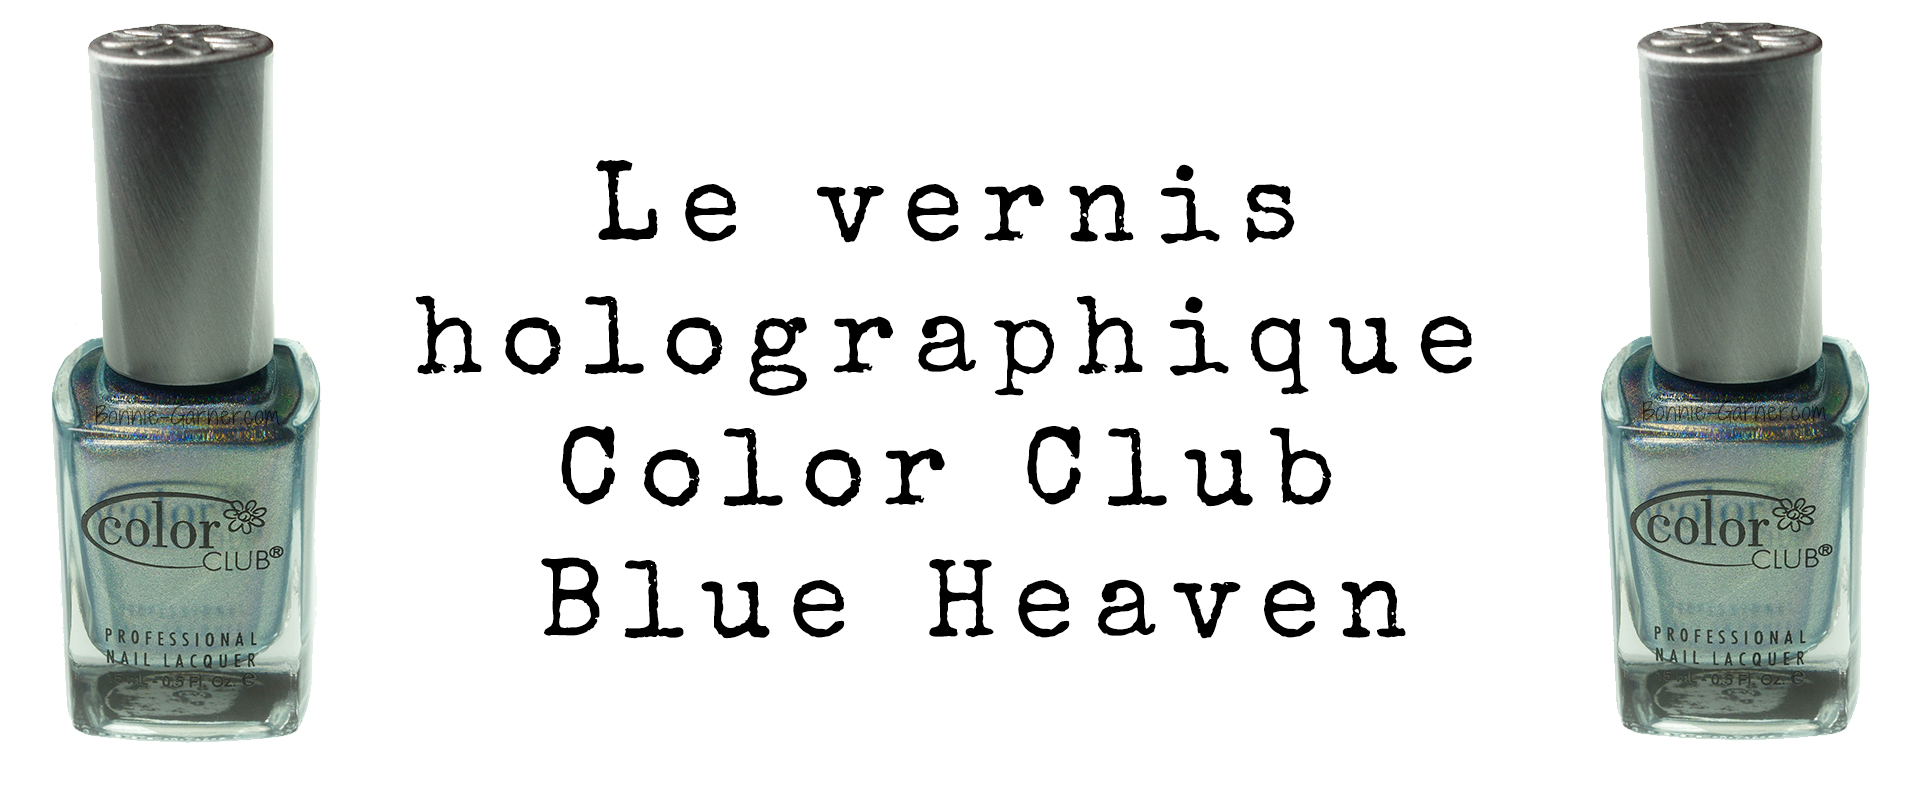 Le vernis holographique de Color Club Blue Heaven